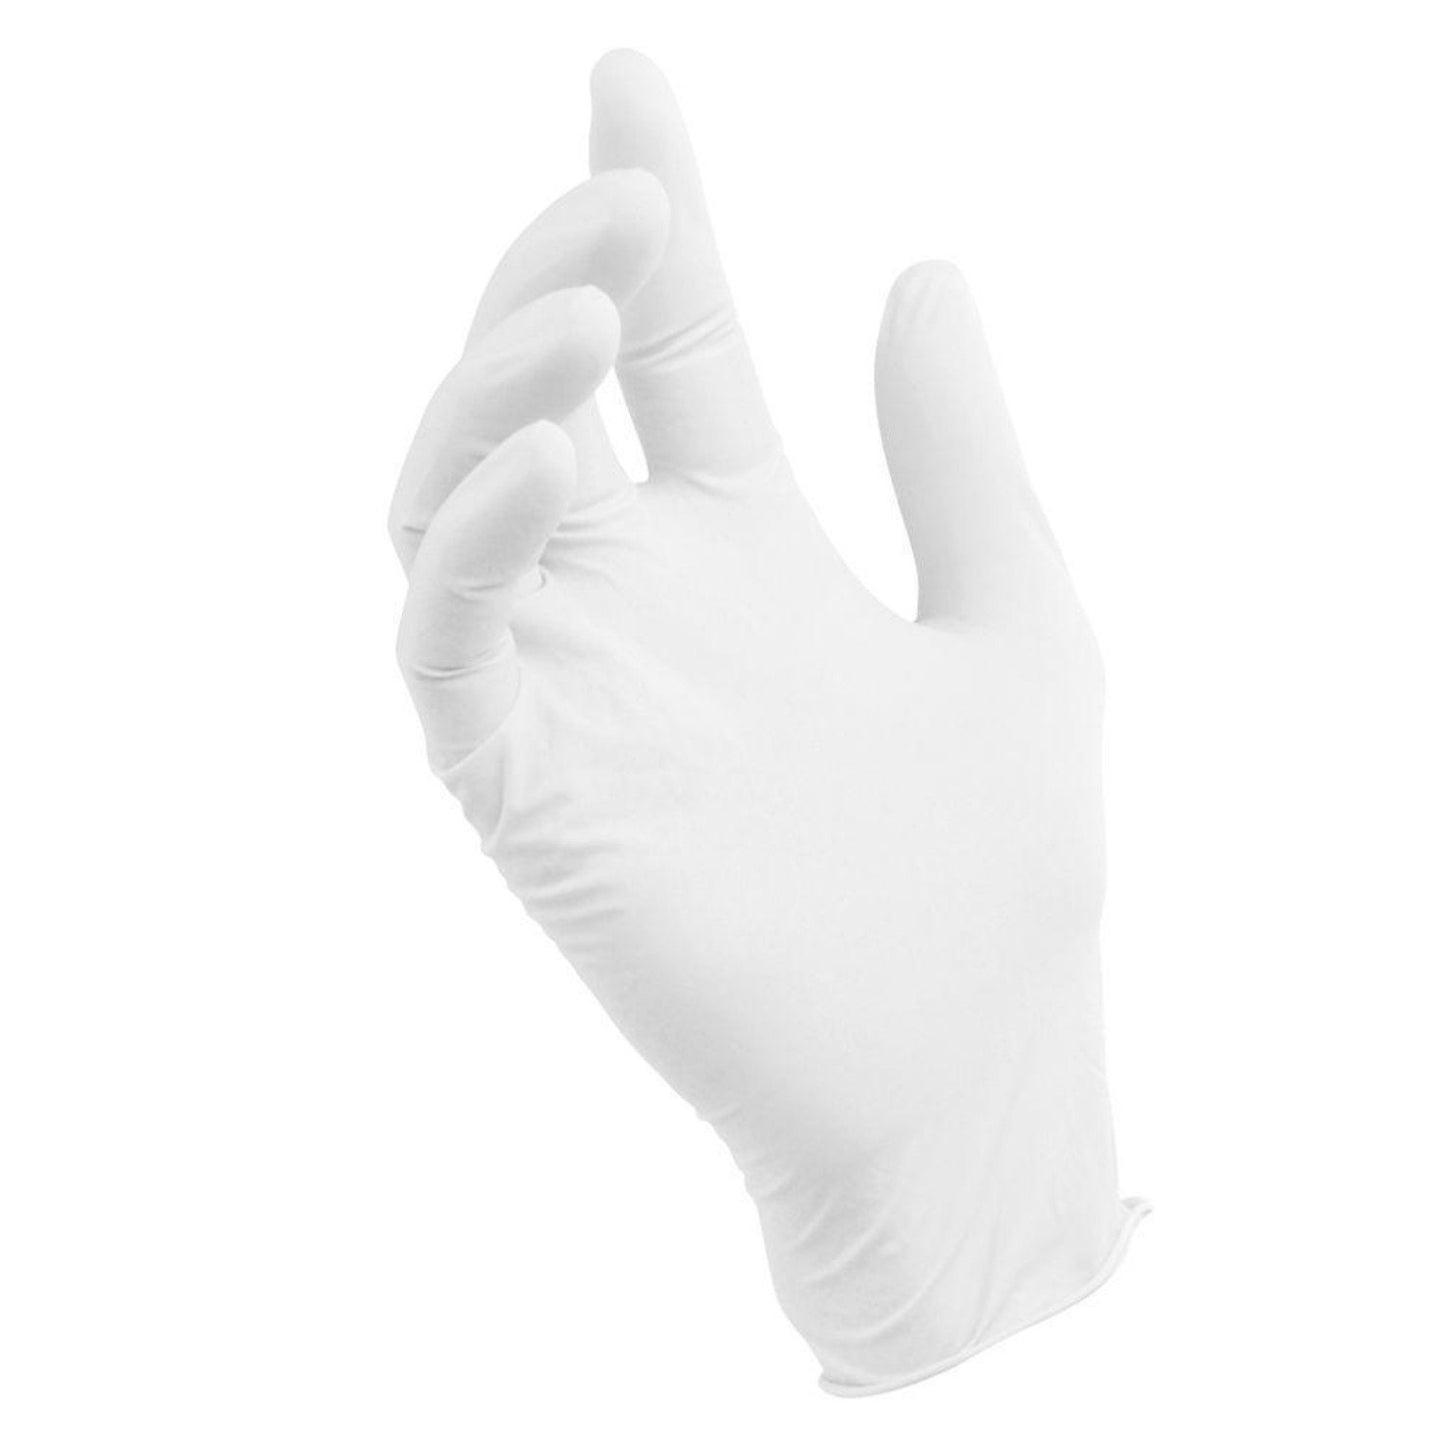 100 PC Vinyl Disposable Gloves - Medium Gloves OnlyOneStopShop   